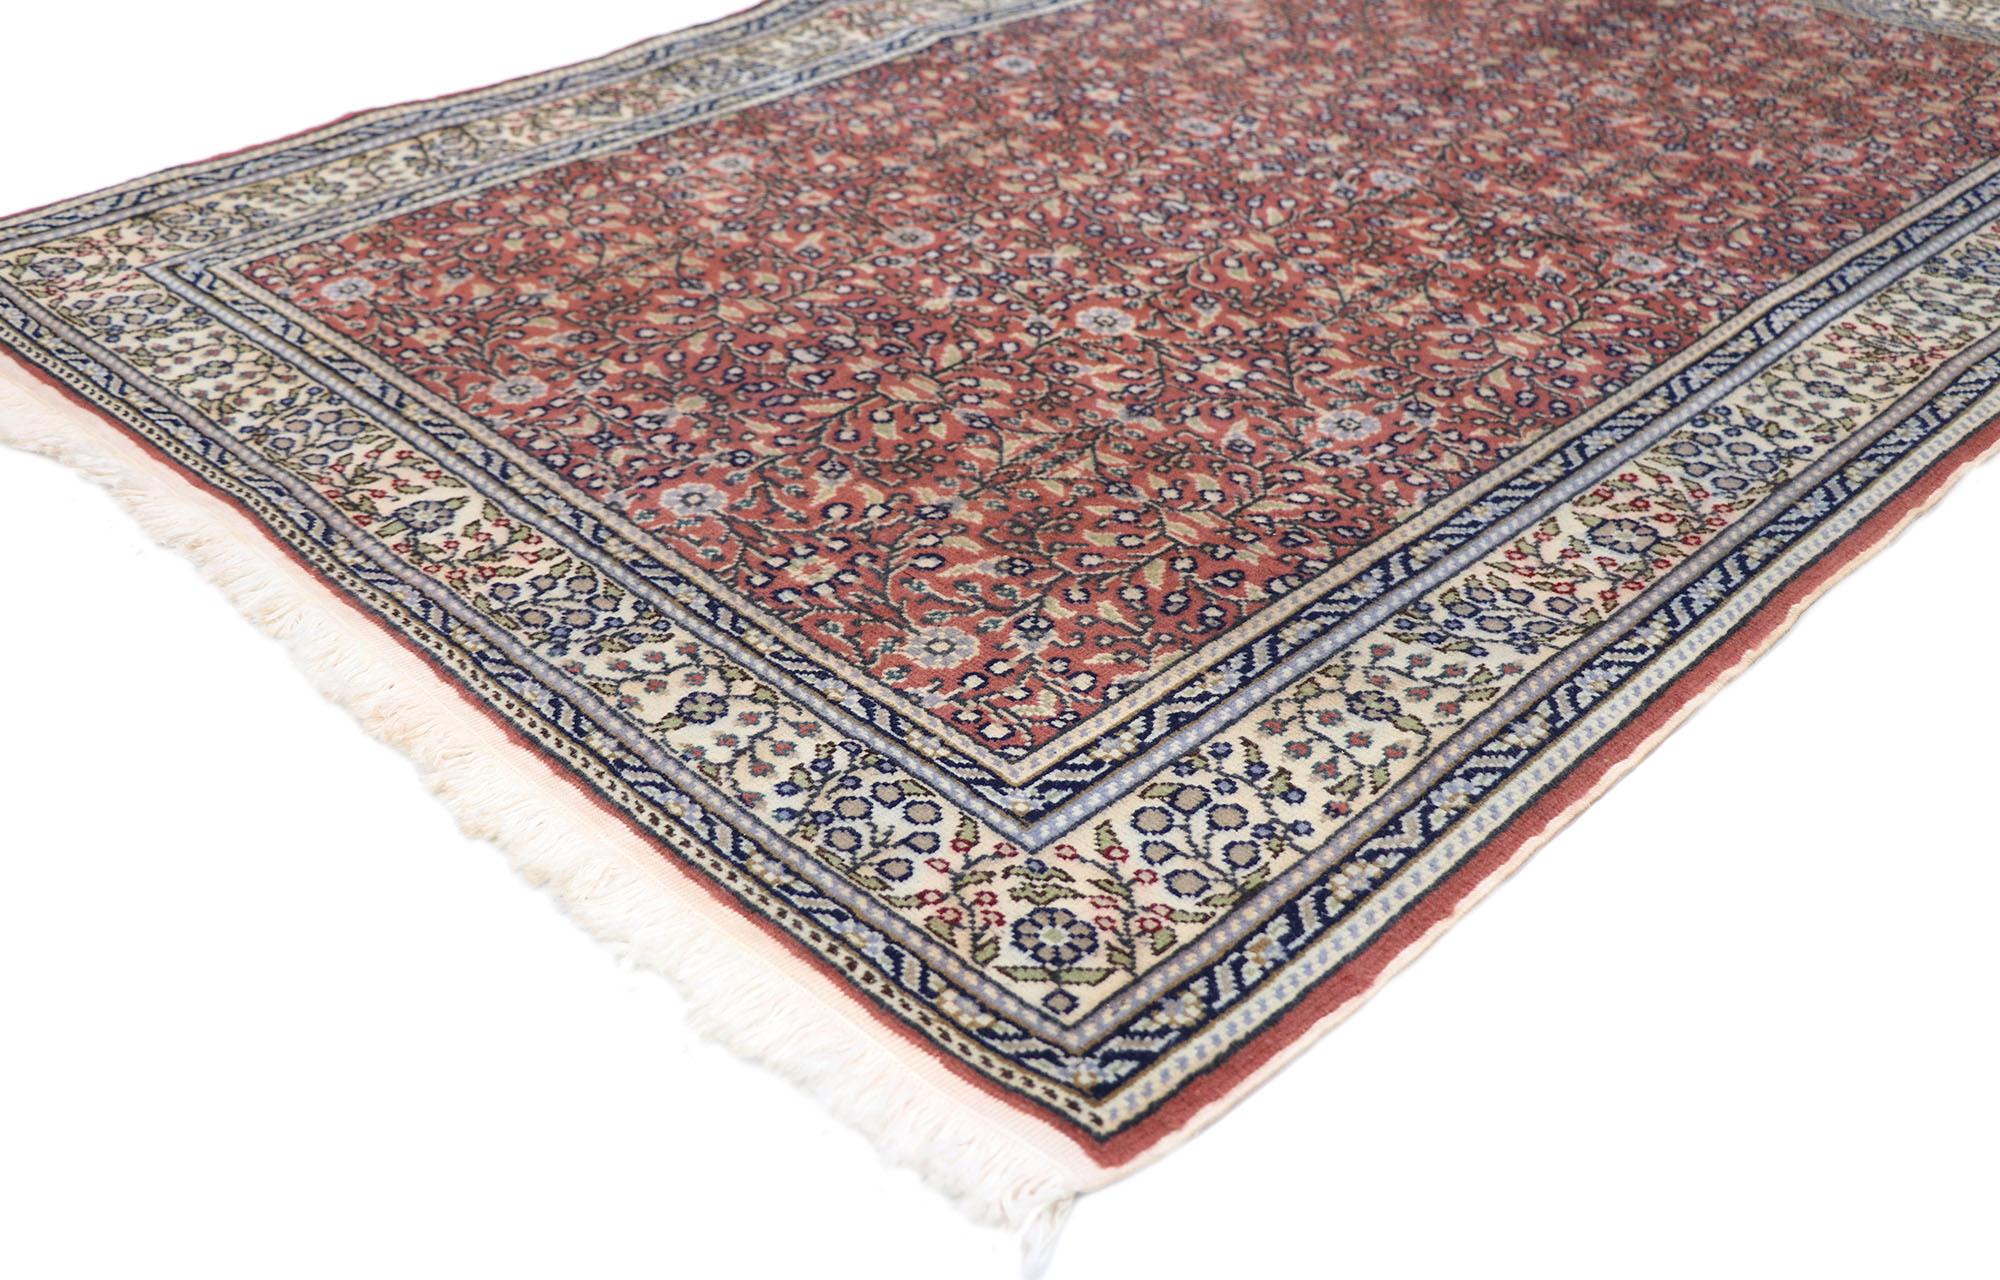 77689 vintage tapis turc Sivas avec style traditionnel 03'11 x 05'08. Avec sa beauté sans effort et sa sensibilité rustique, ce tapis Sivas turc vintage en laine noué à la main incarne à merveille le style traditionnel. Le champ rouge brique abrasé